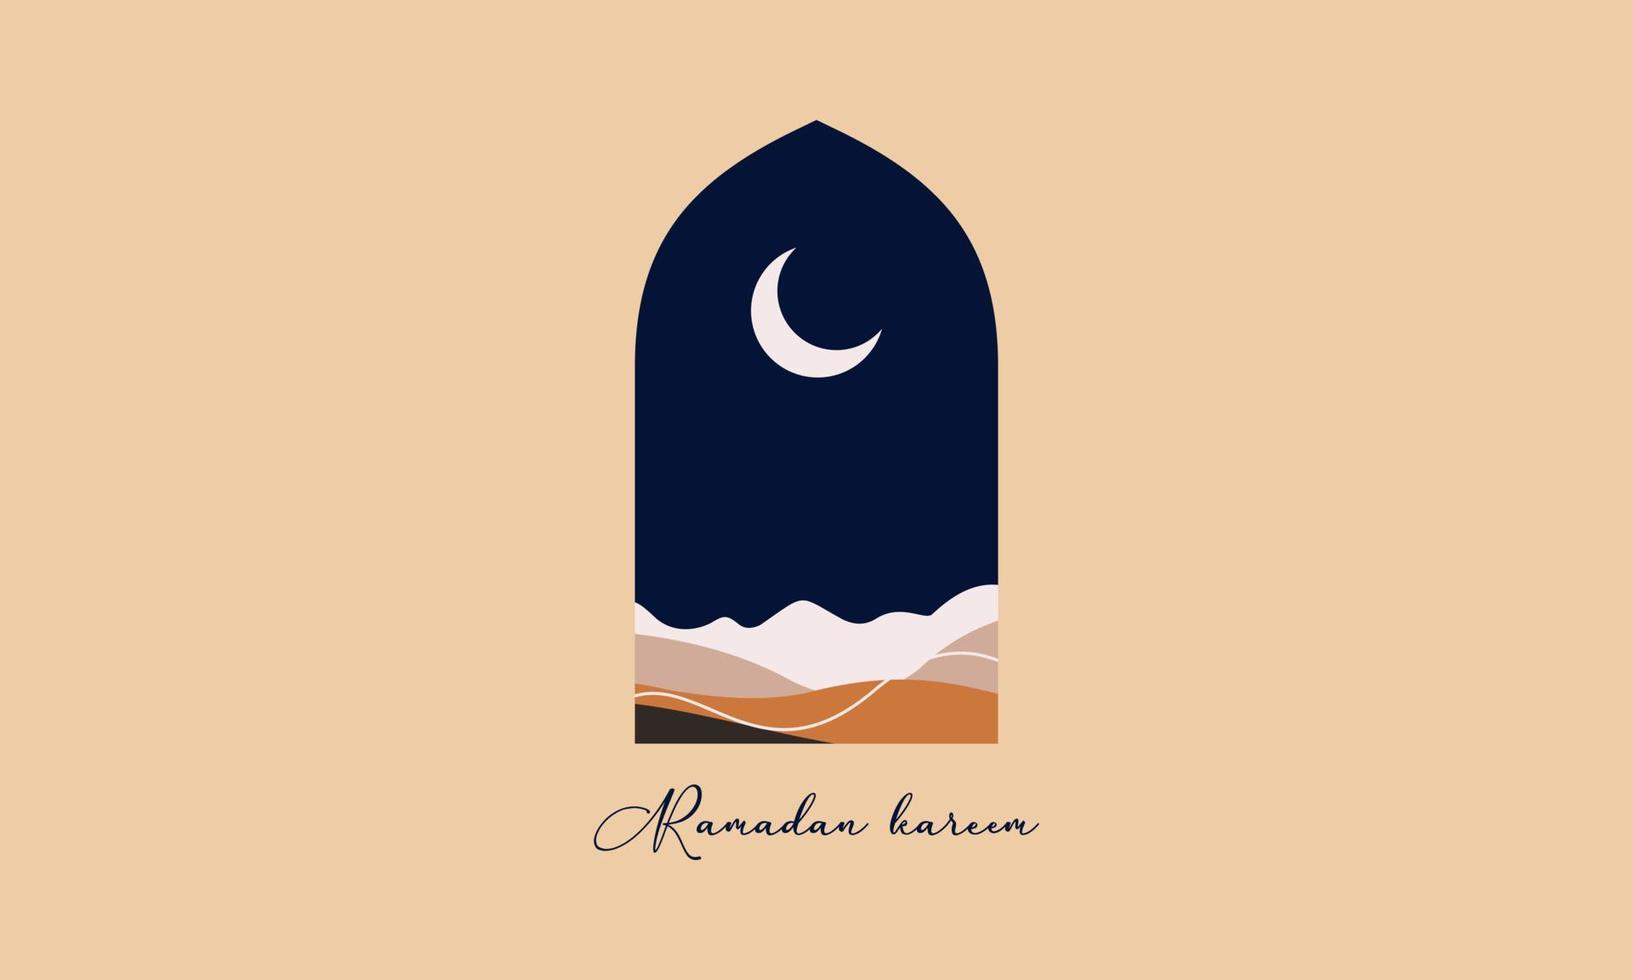 tarjetas de felicitación de ramadán mubarak de estilo moderno con diseño retro boho, luna, cúpula de mezquita y linternas vector